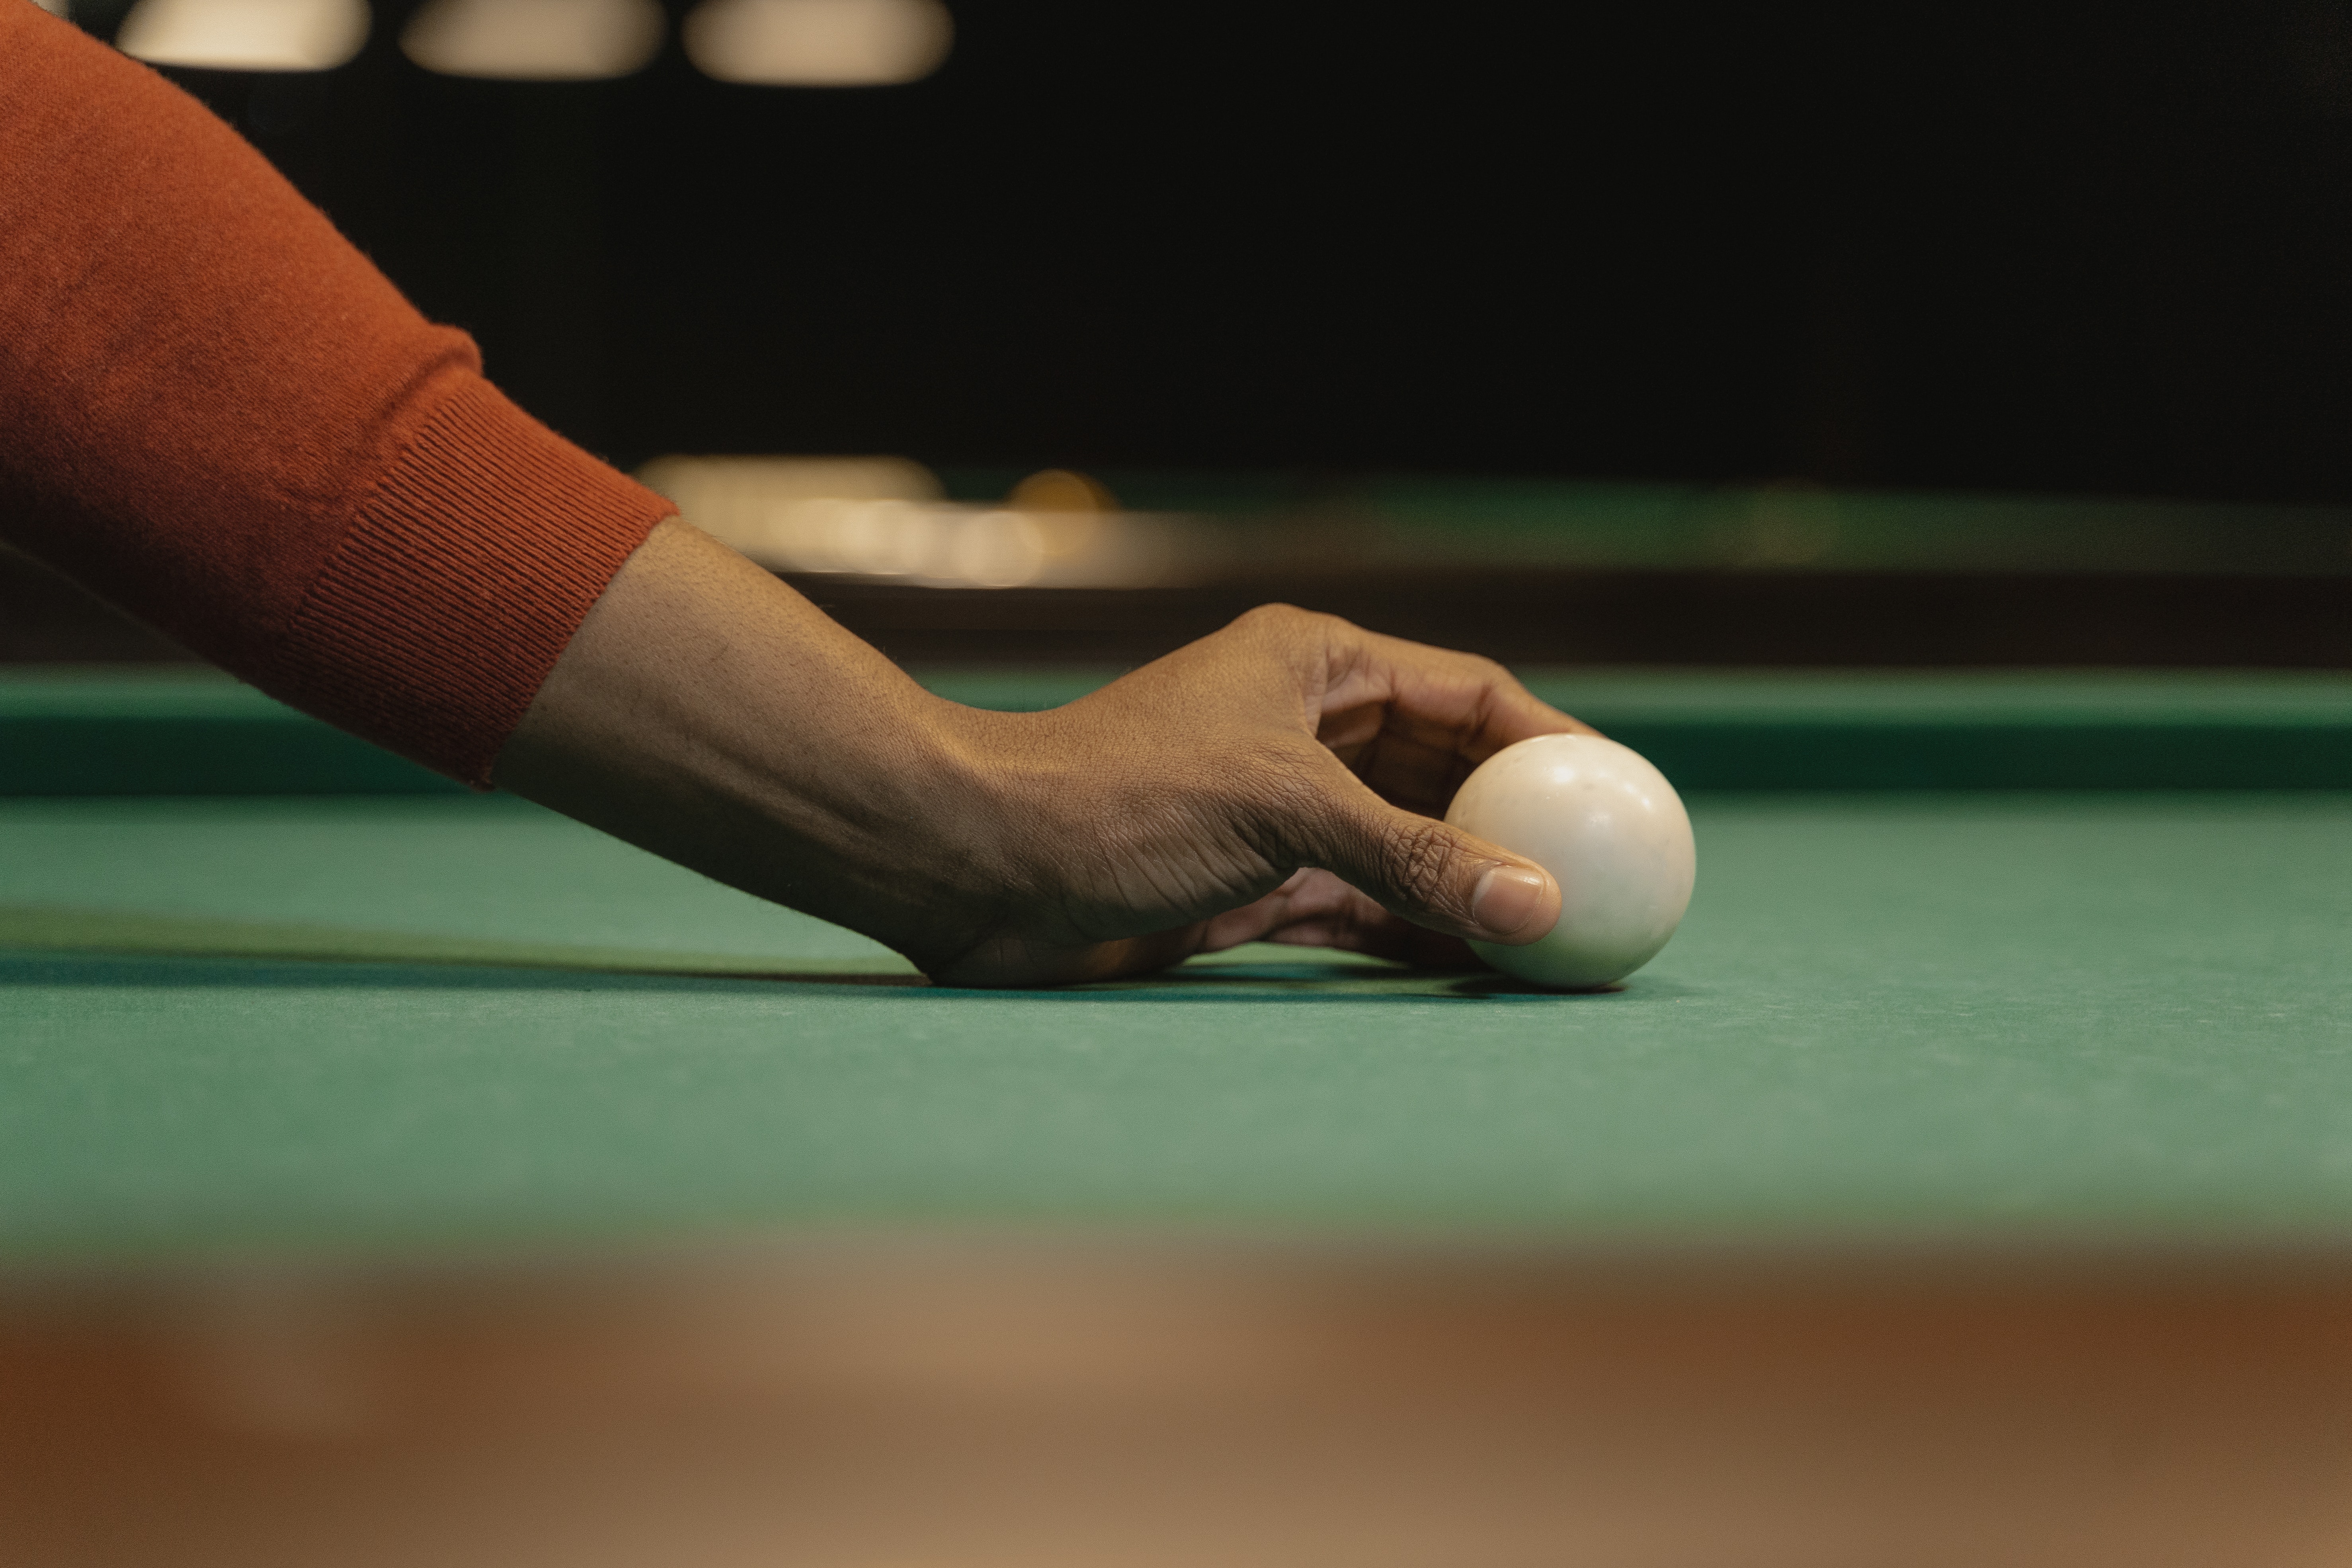 Taco de bilhar e bolas coloridas na mesa de sinuca durante o jogo